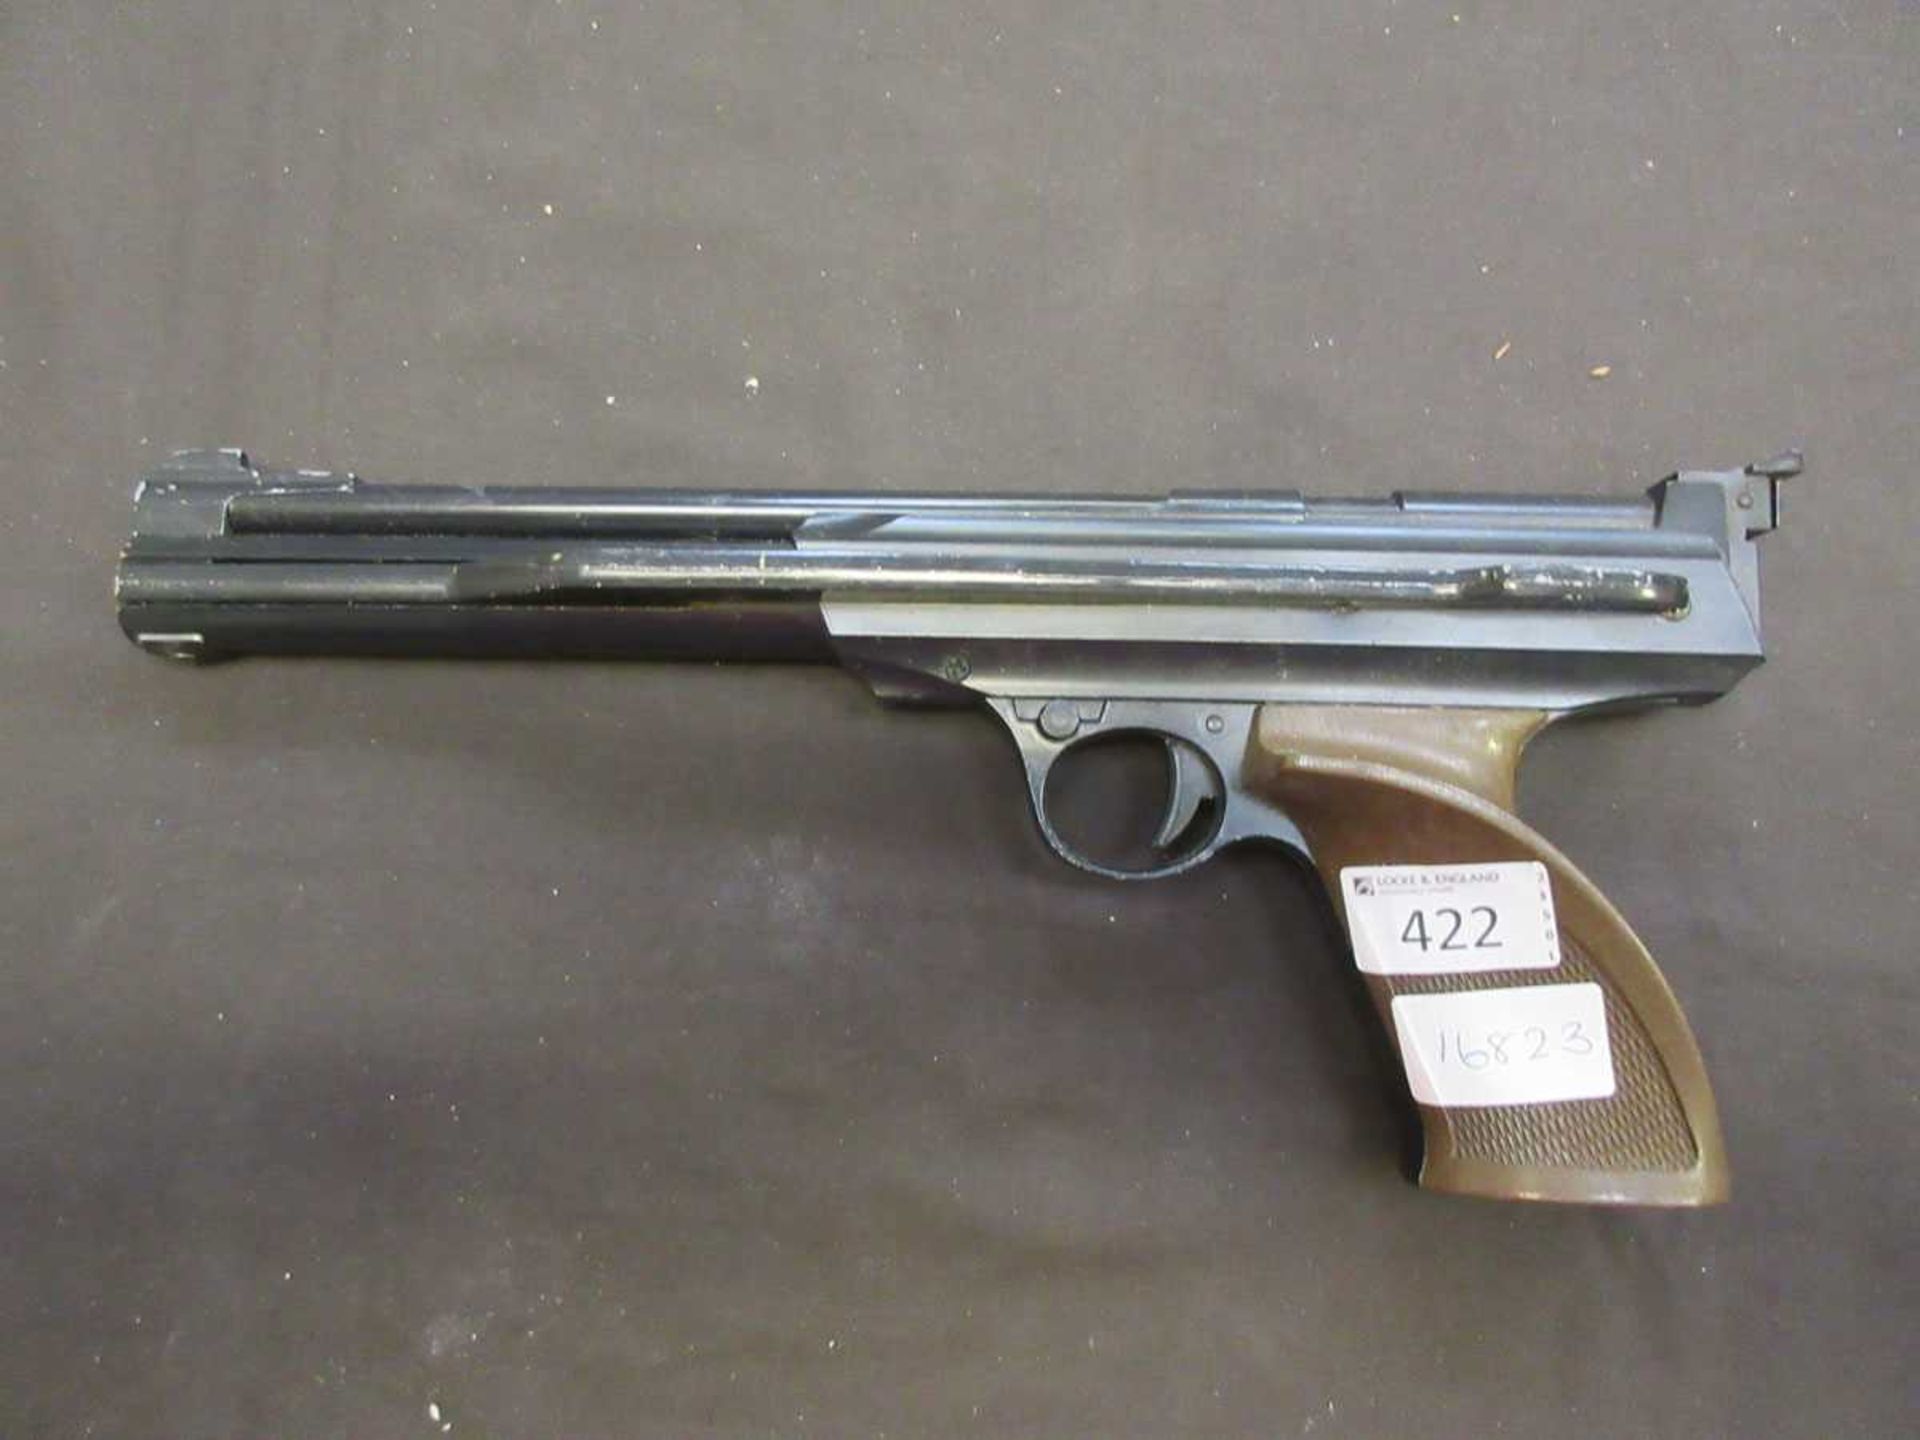 A Daisy Powerline .177 caliber air pistol